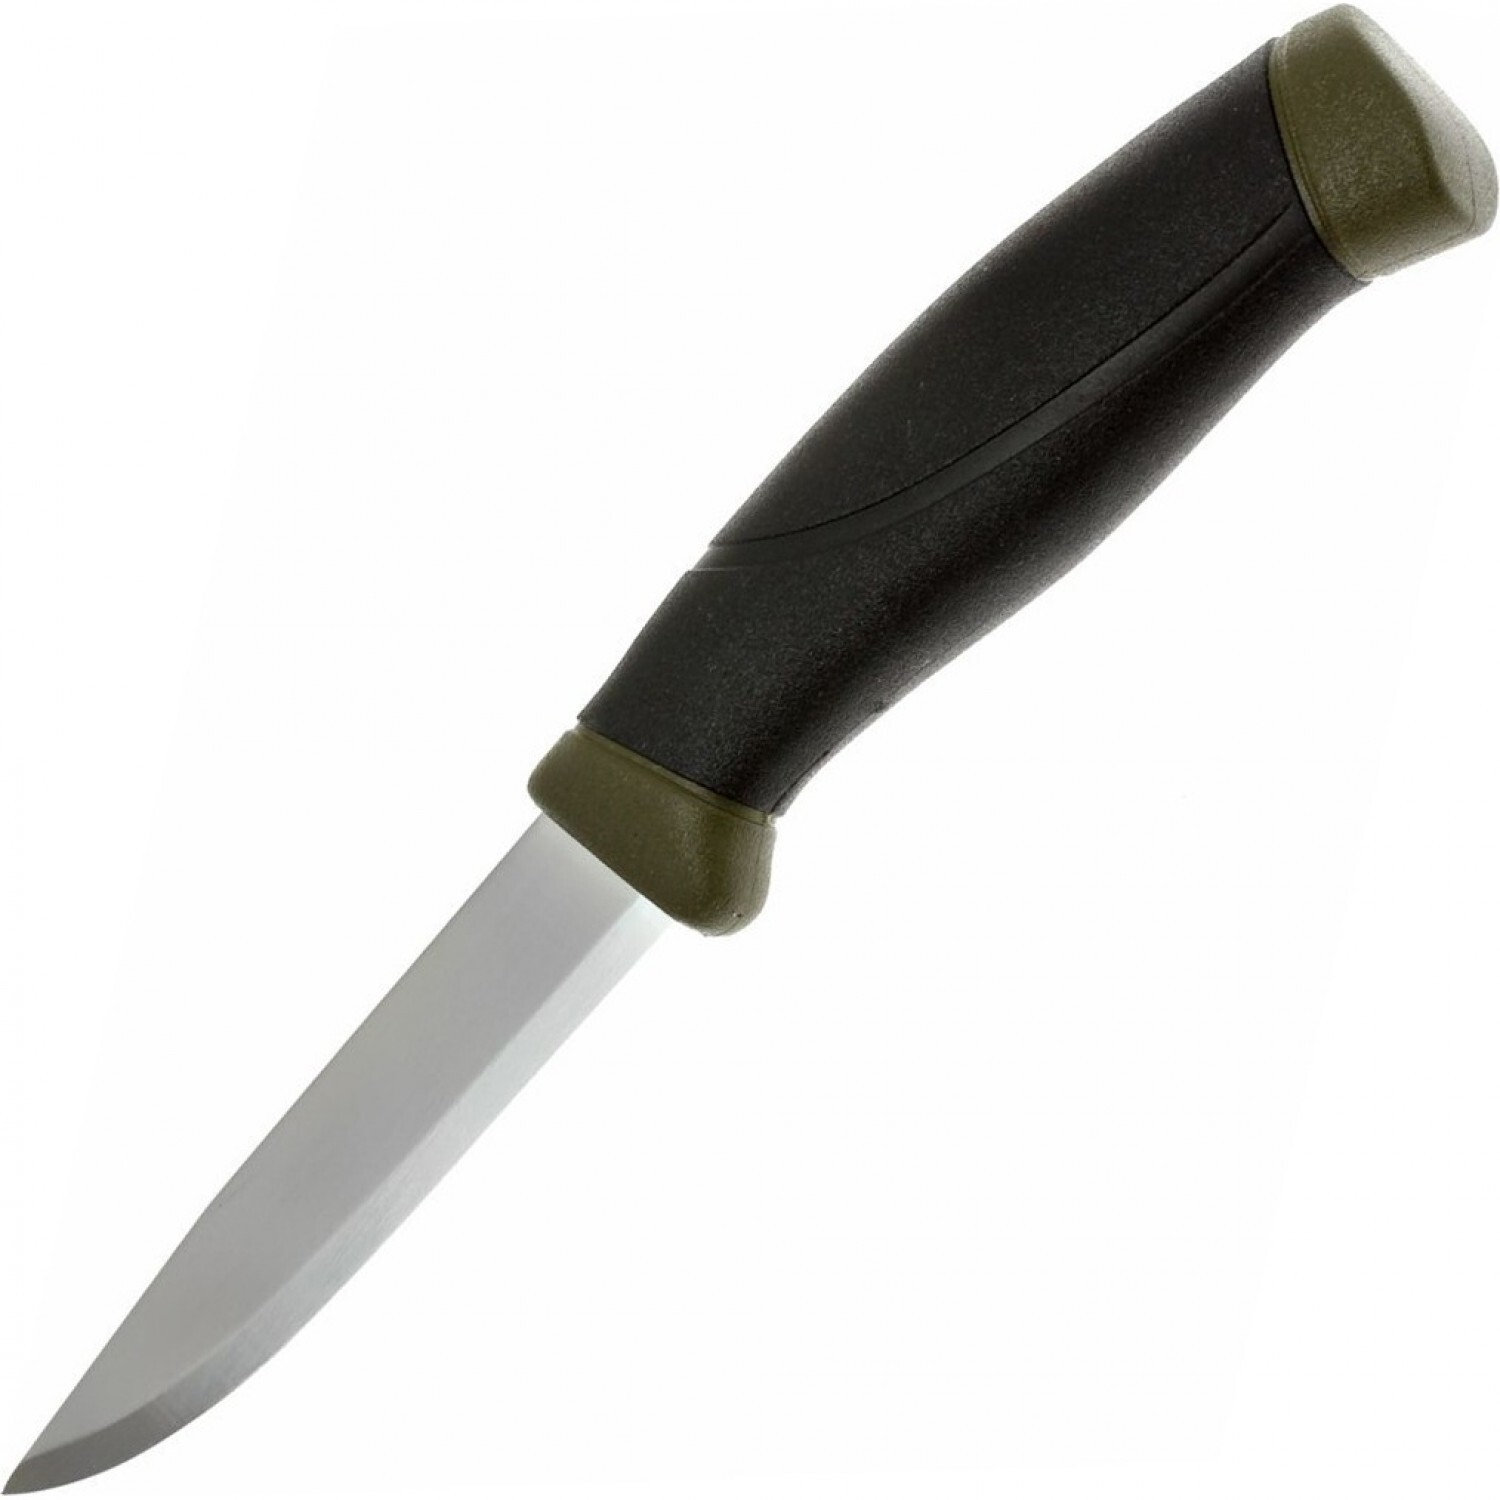 Нож с фиксированным лезвием Morakniv Companion MG (C), углеродистая сталь, рукоять резина/пластик, цвет хаки нож страж сталь aus 8 рукоять хаки кизляр